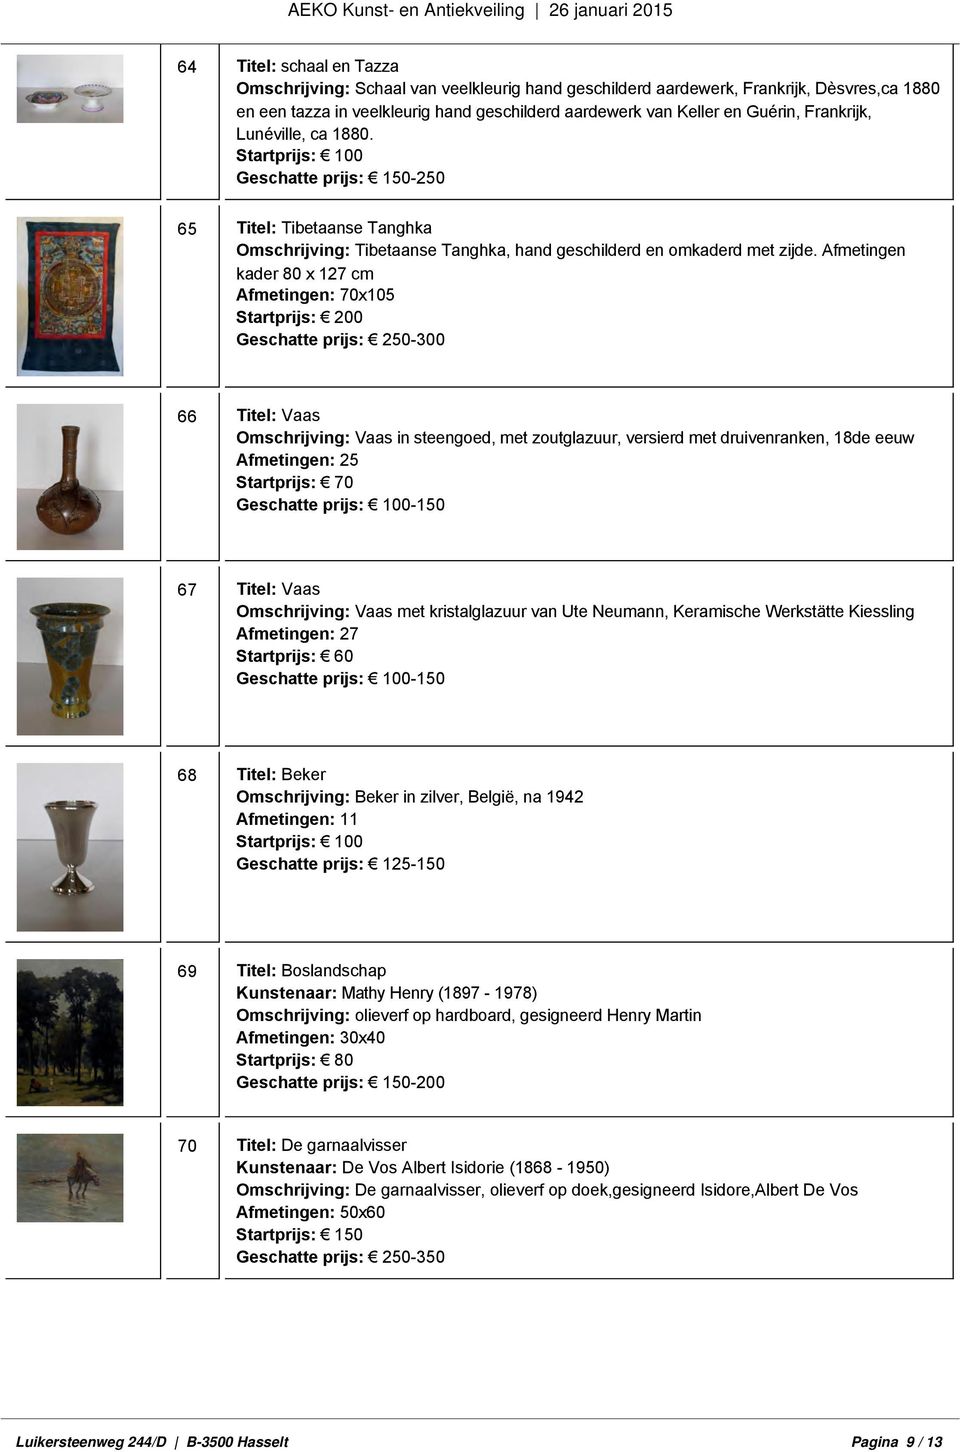 Afmetingen kader 80 x 127 cm Afmetingen: 70x105 Startprijs: 200 Geschatte prijs: 250-300 66 Titel: Vaas Omschrijving: Vaas in steengoed, met zoutglazuur, versierd met druivenranken, 18de eeuw